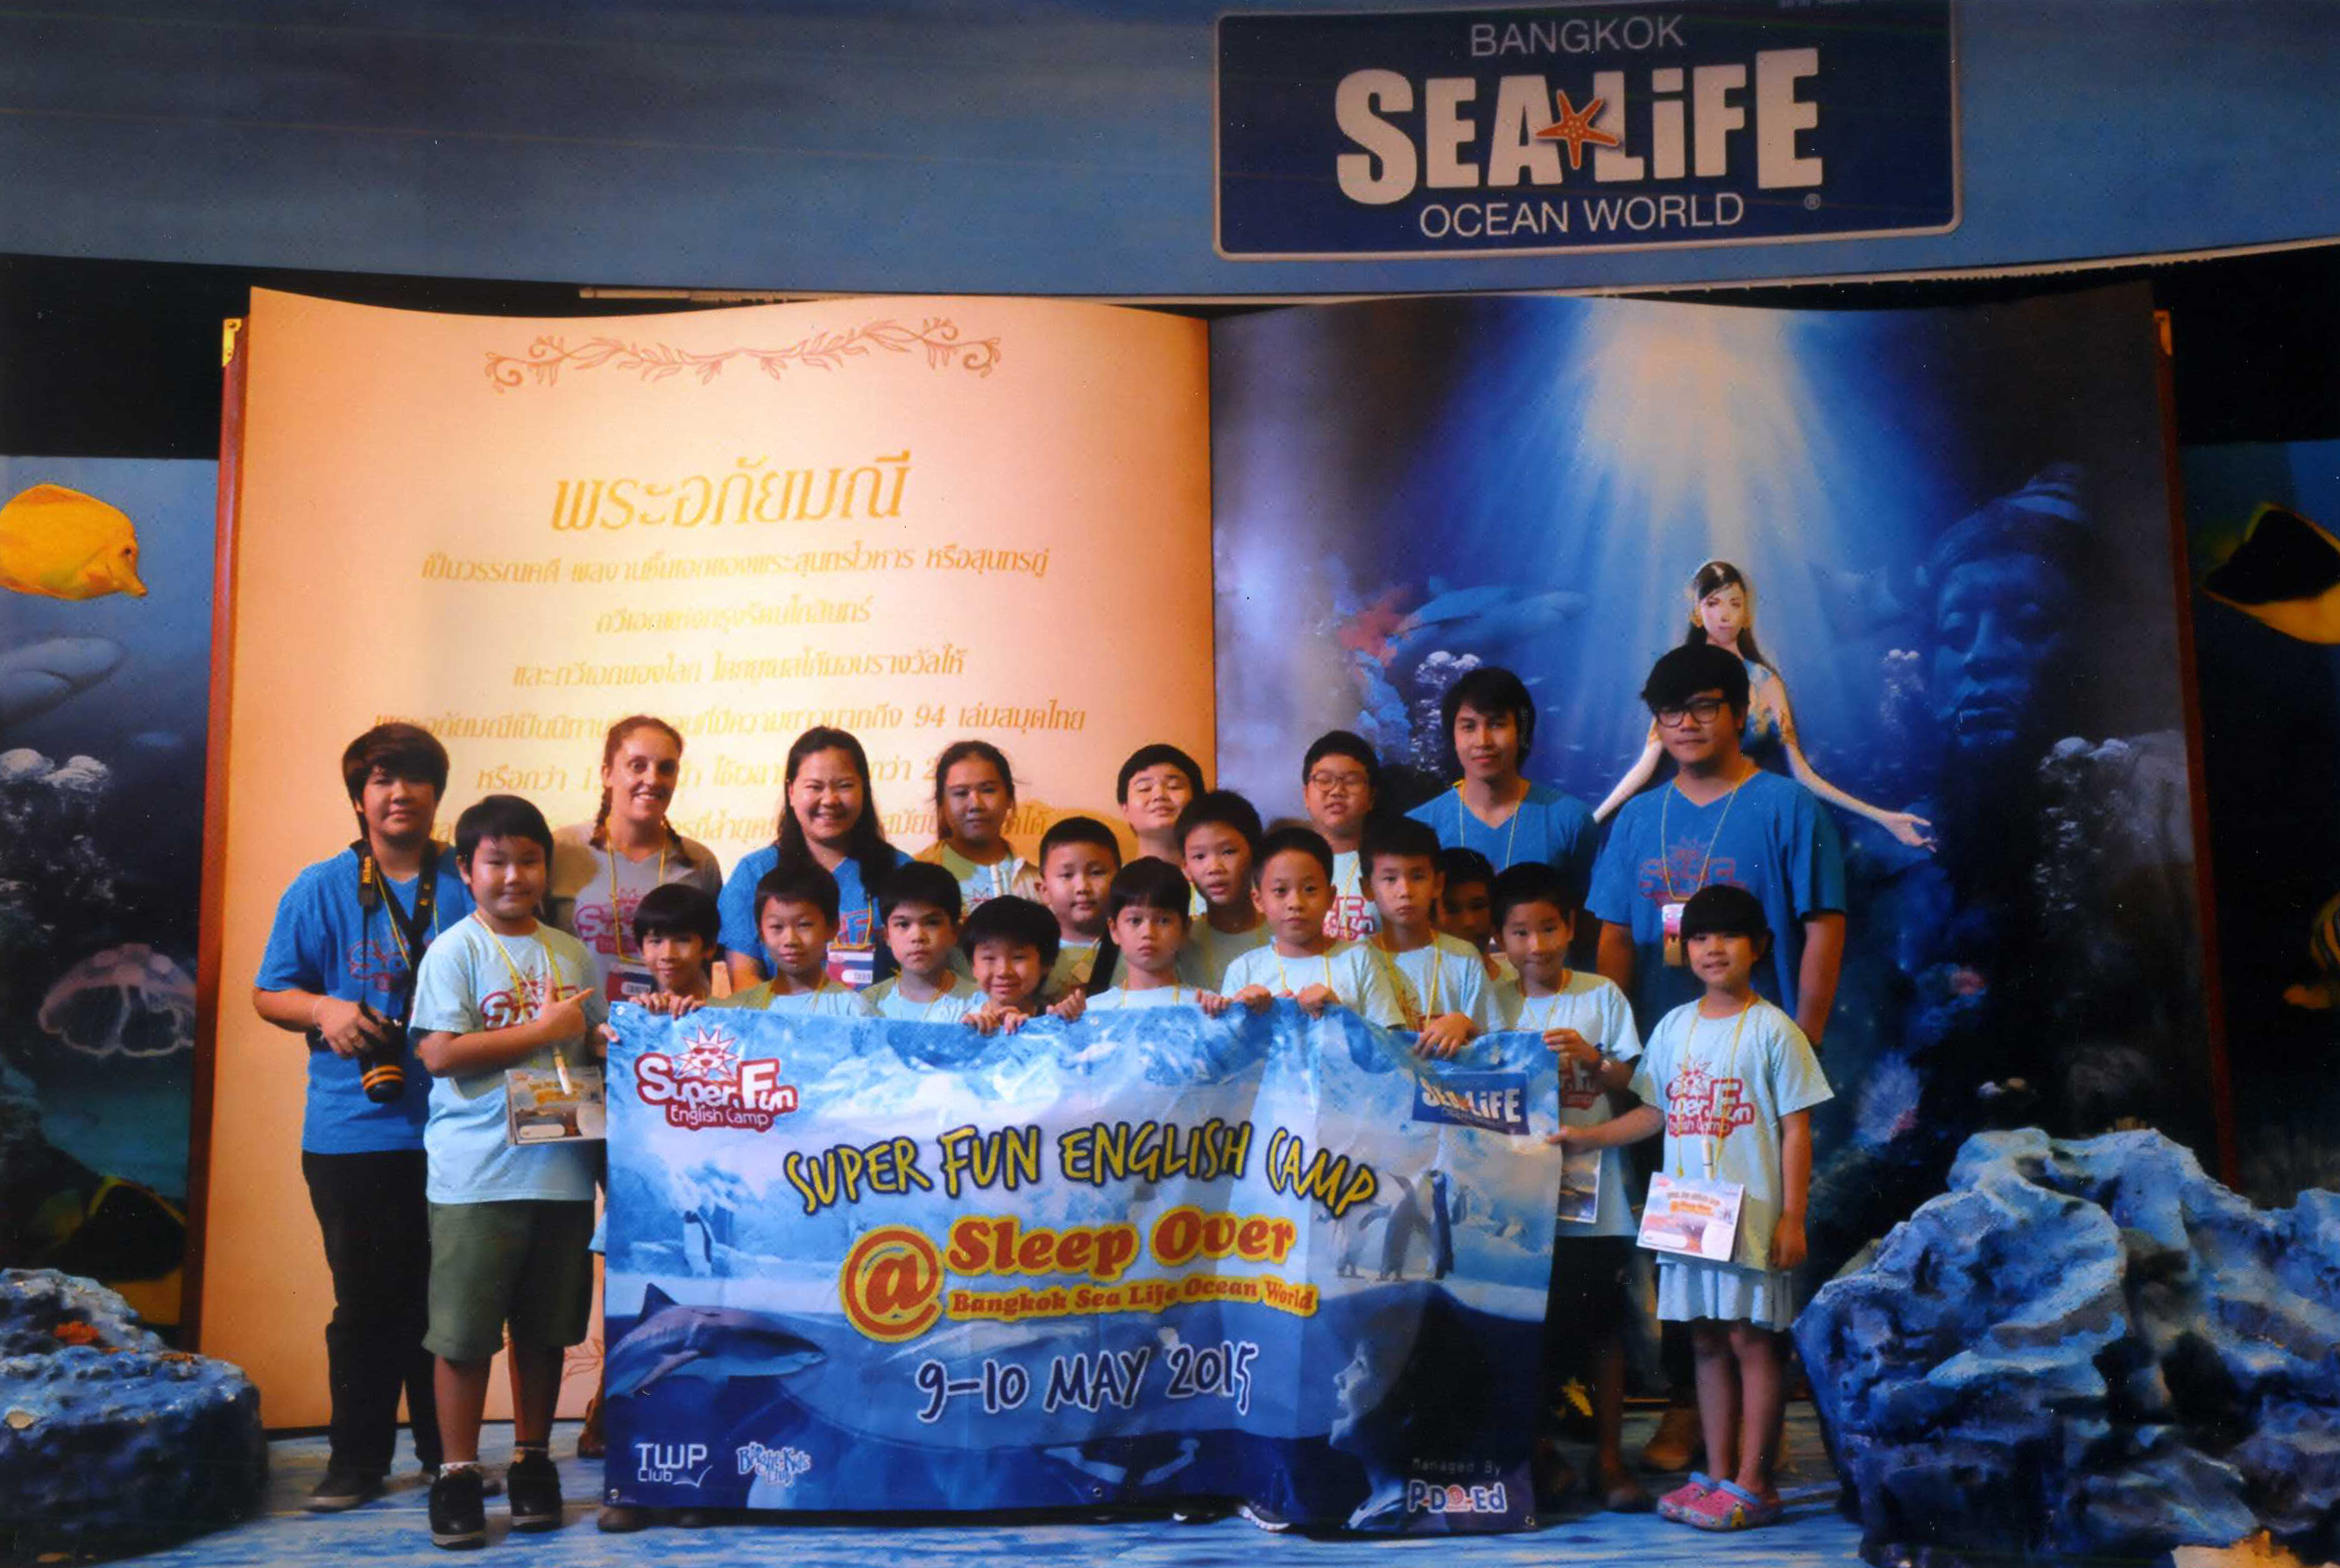 ผจญภัย ณ “Bangkok Sea Life Ocean World”